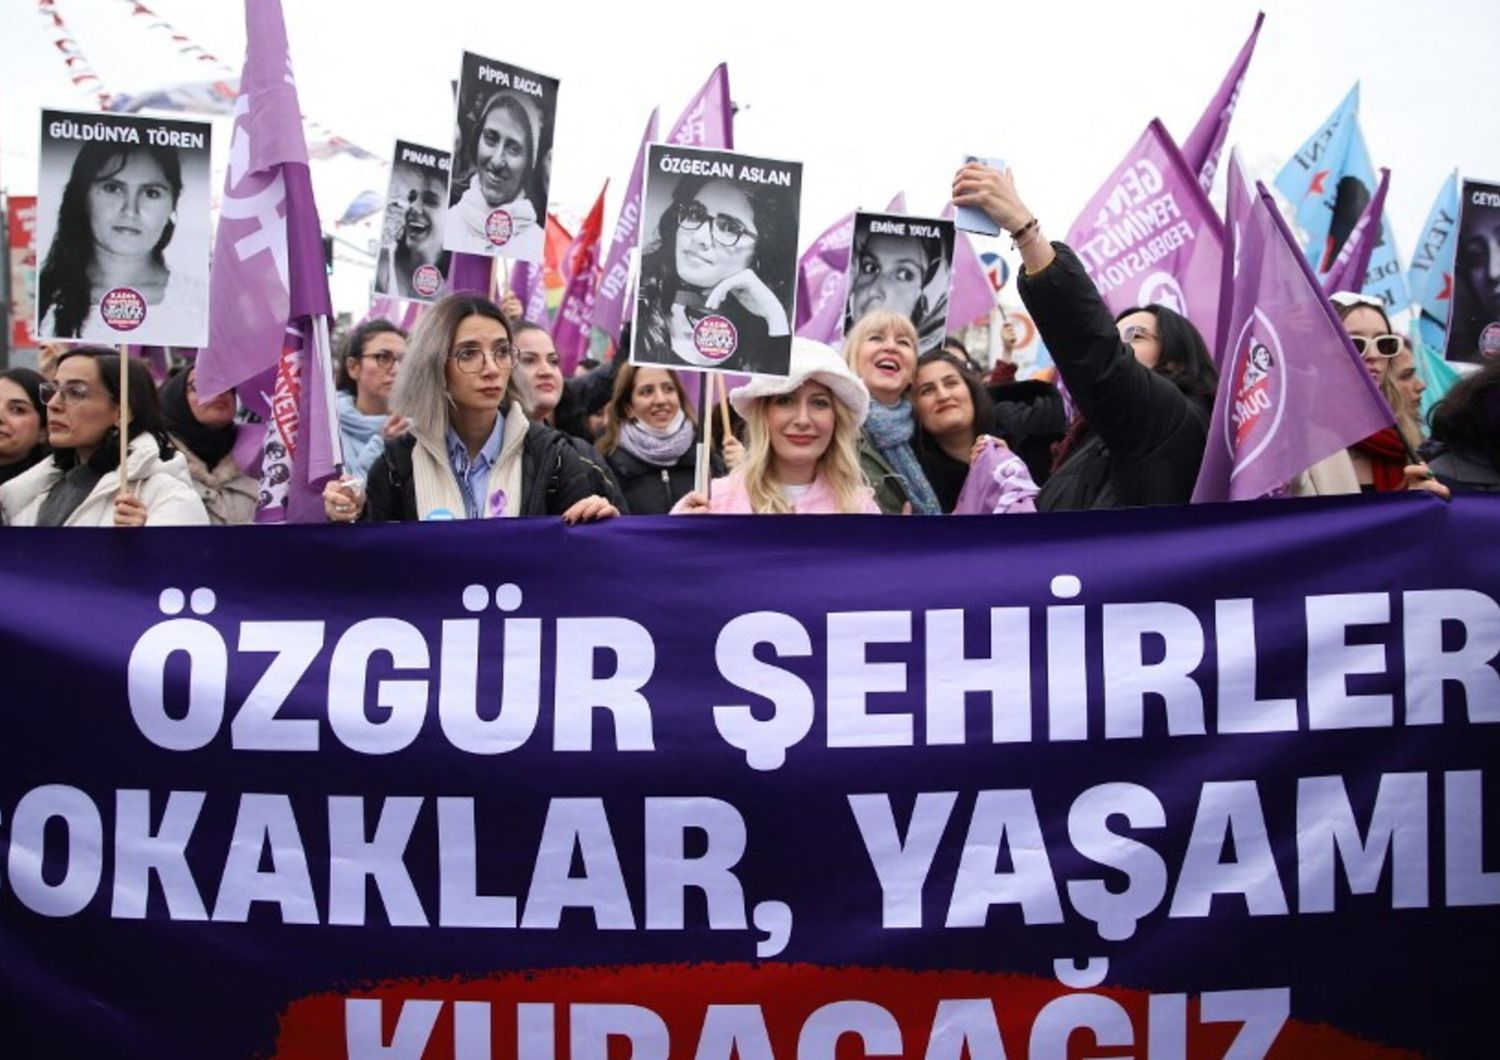 La manifestazione del 3 marzo scorso tenuta dalle donne turche a Kadikoy per celebrare l'8 marzo con slogan, danze e dichiarazioni.